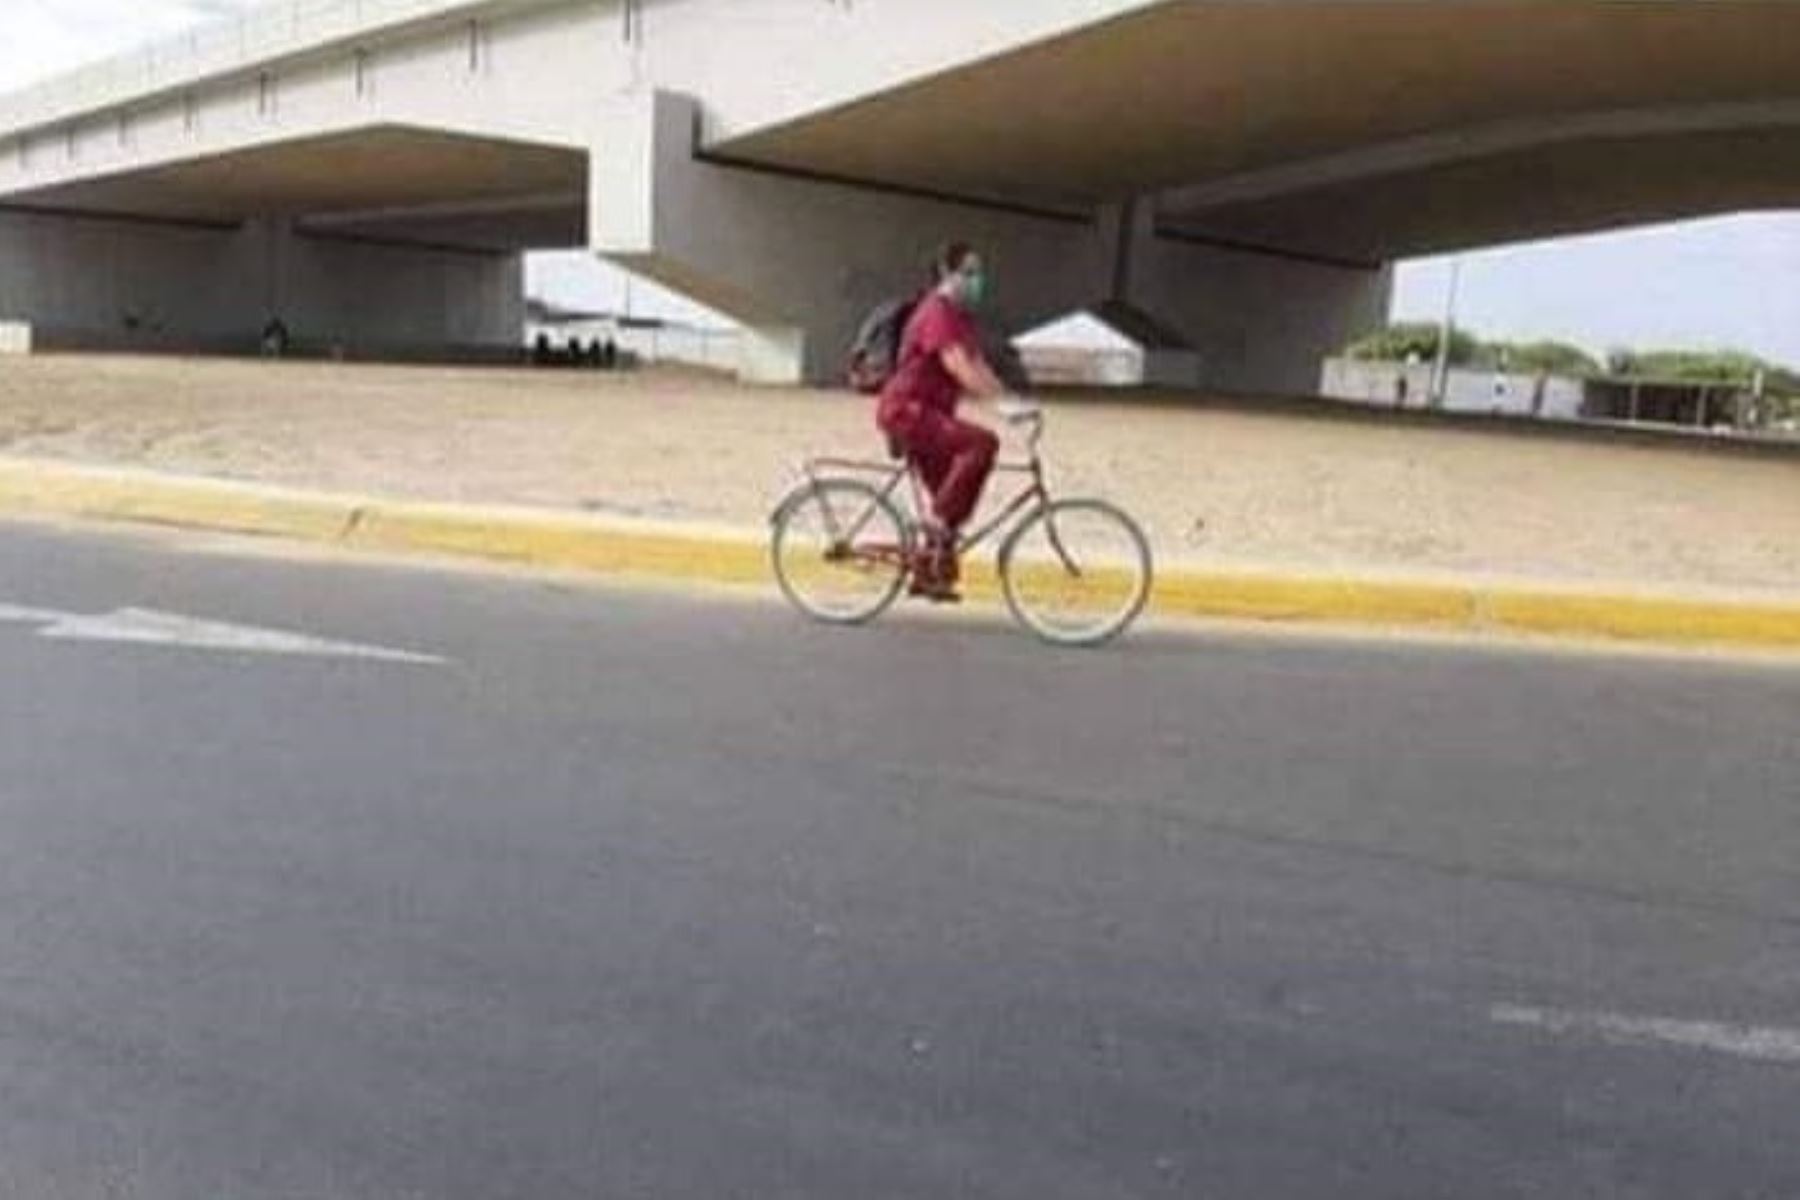 Esta es la imagen difundida en redes sociales que muestra a Yoshida Eto, la heroína de los peruanos, yendo a trabajar montada en su bicicleta.